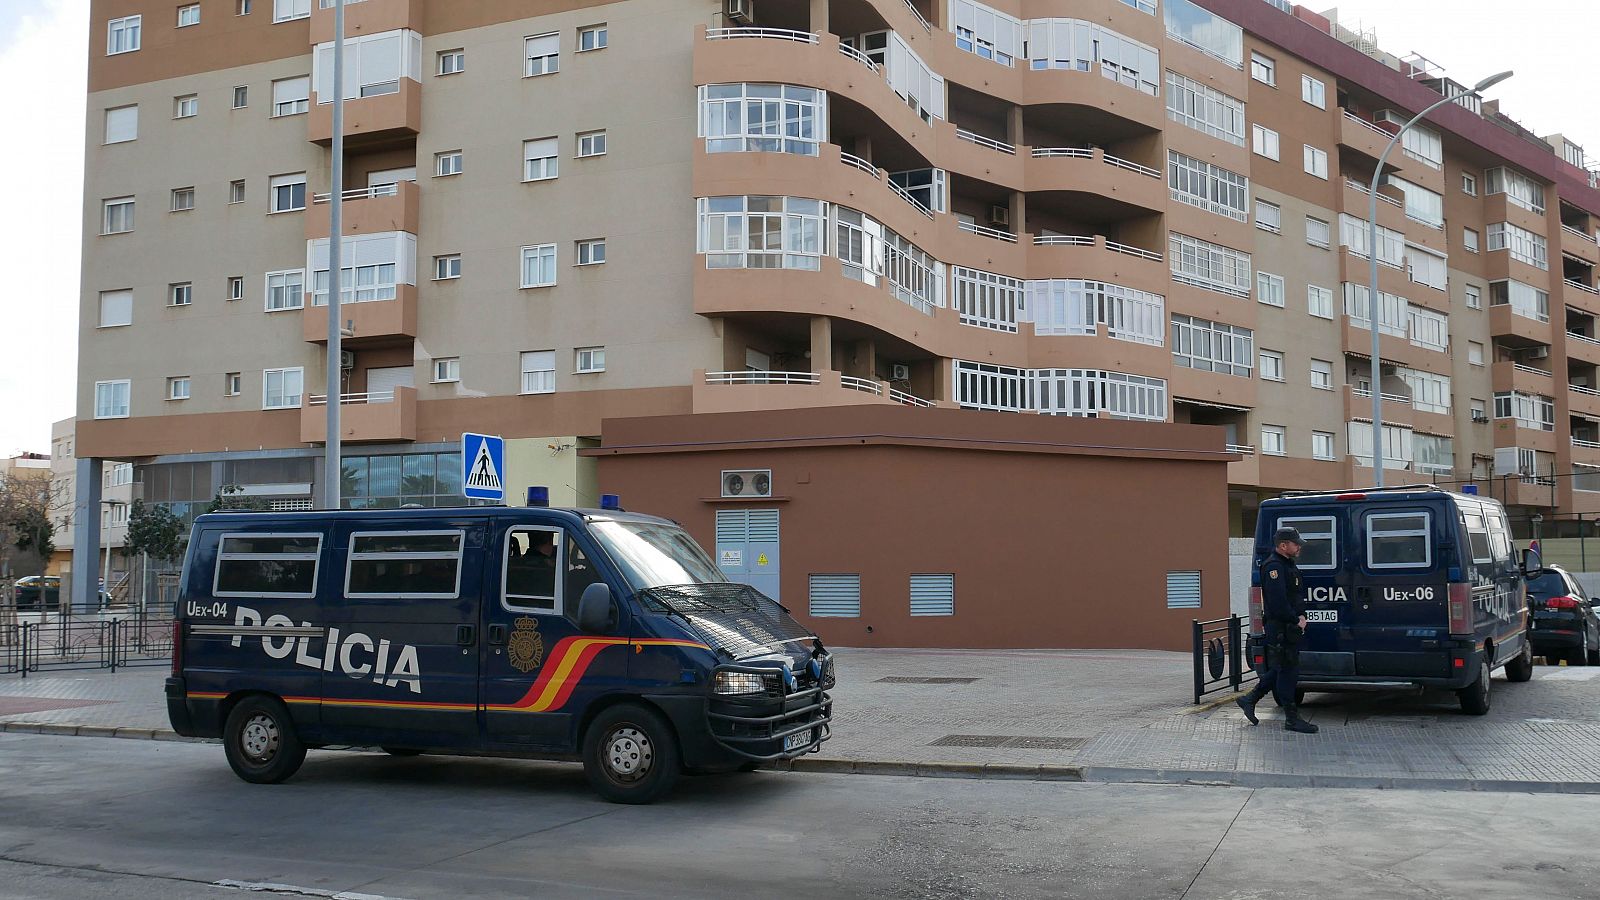 Uno de los registros, en el barrio del Real, en la operación que investiga la compra de votos en Melilla